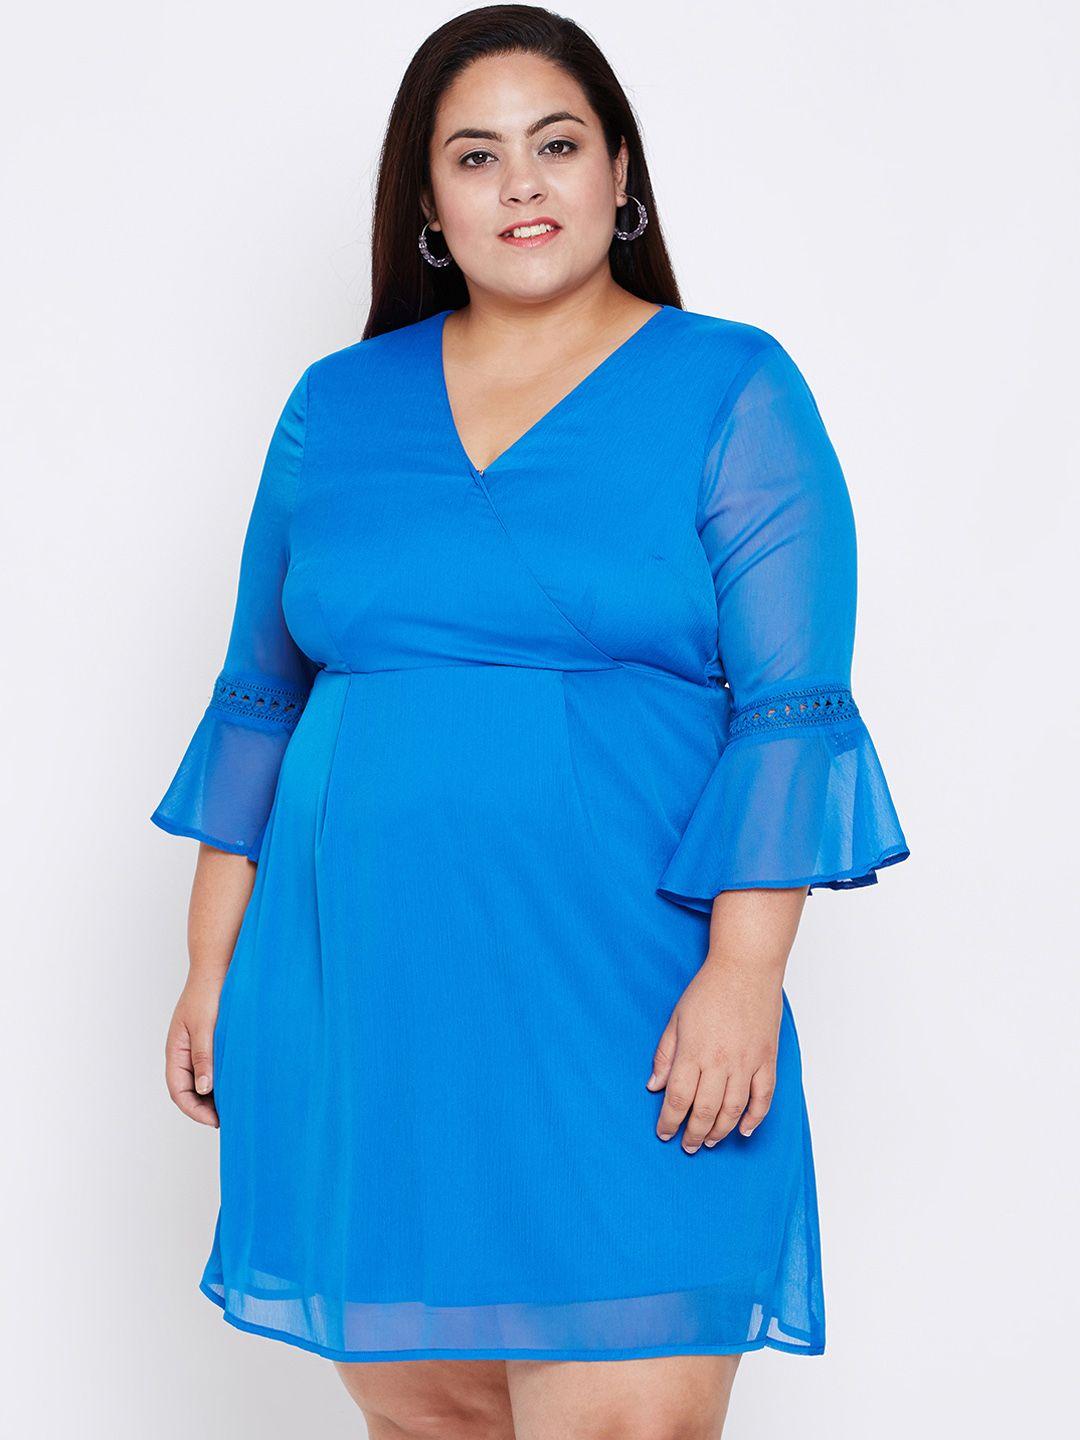 oxolloxo-women-blue-empire-dress